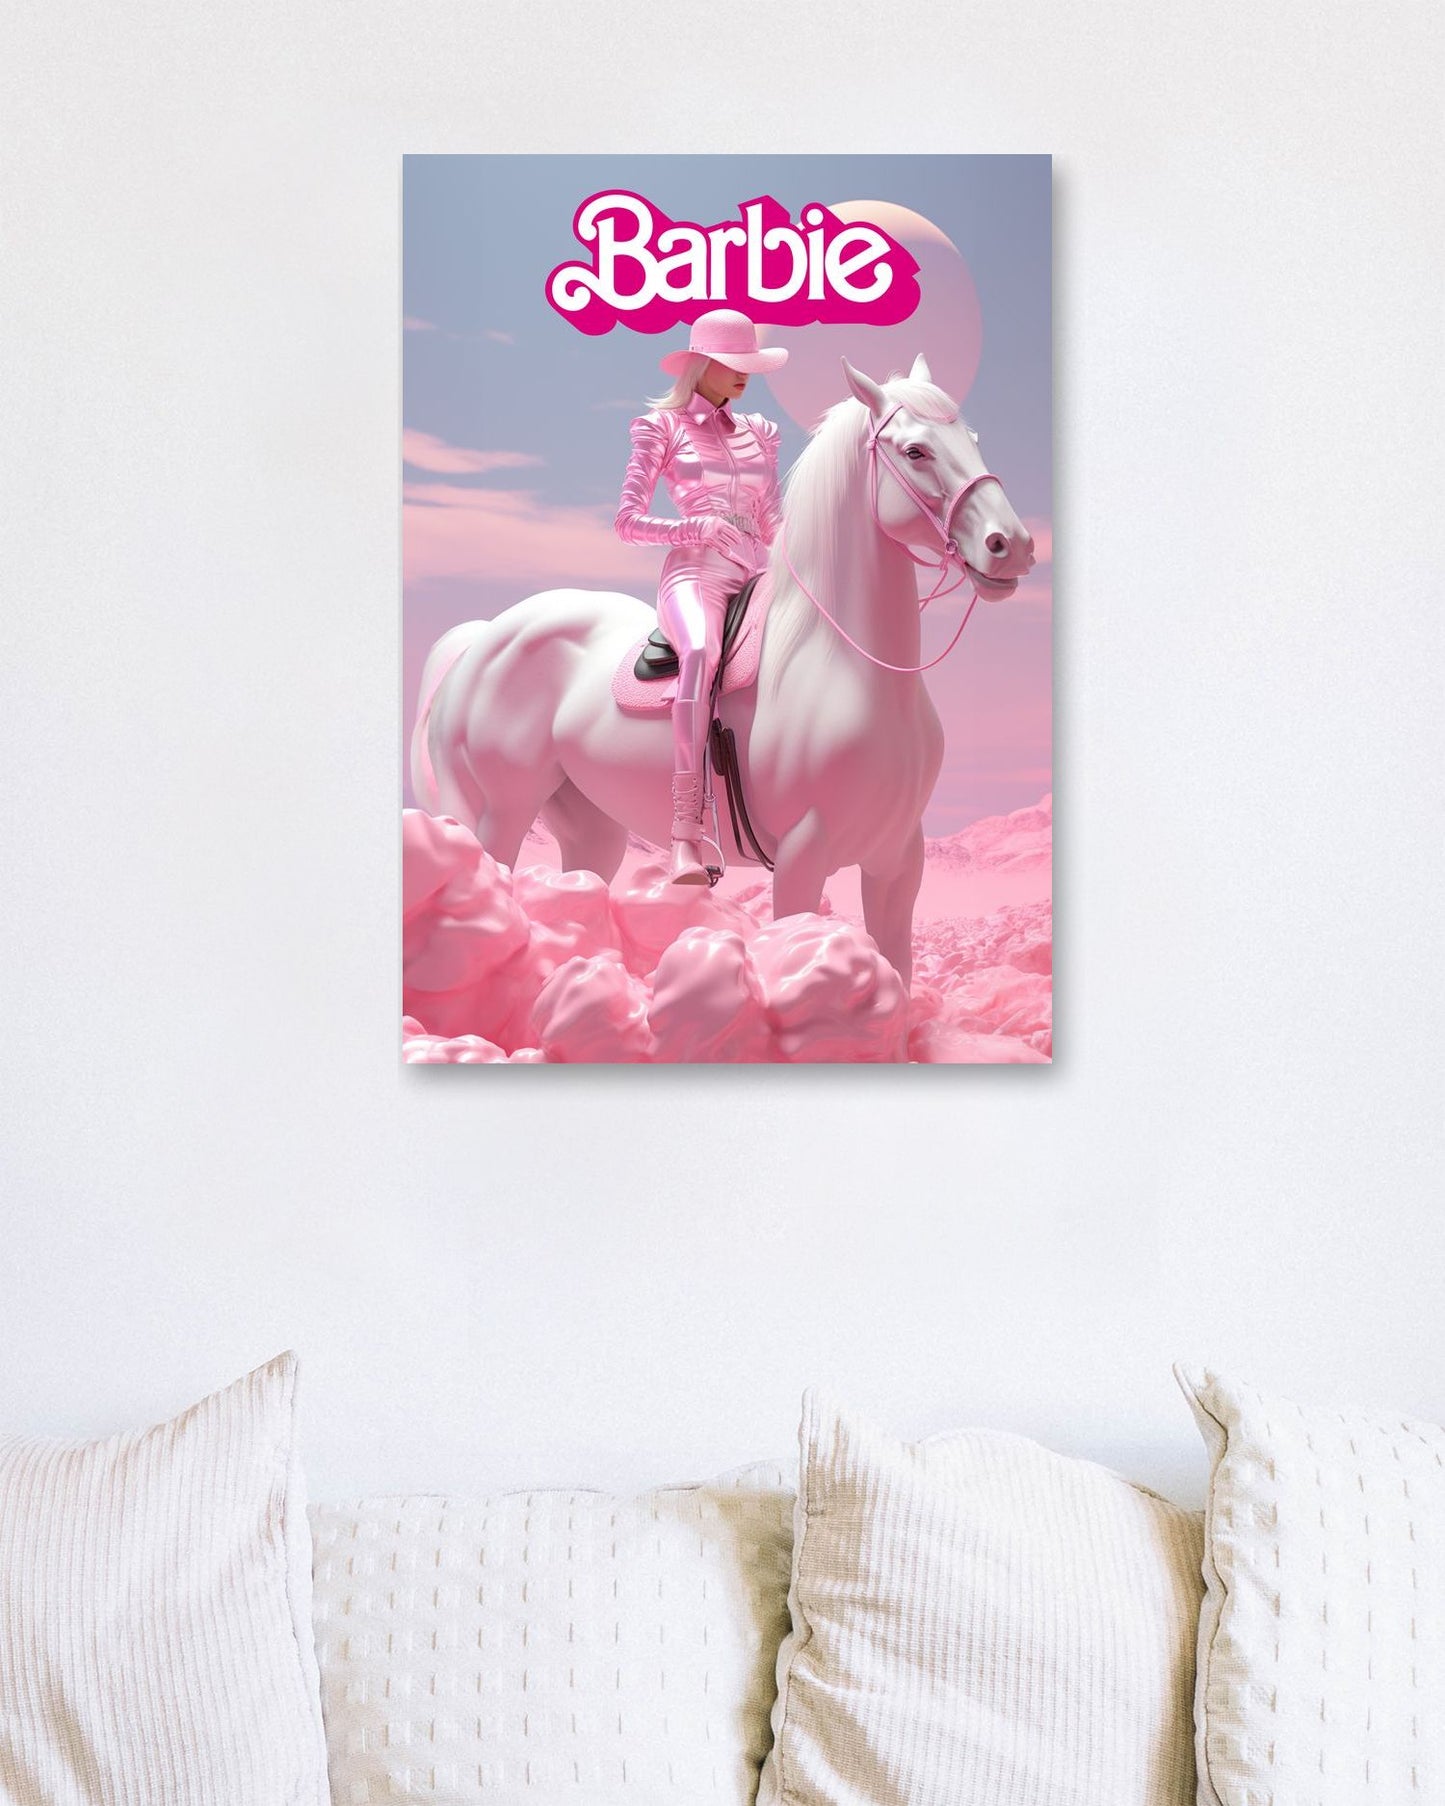 Barbie Cowgirl 2 - @donluisjimenez